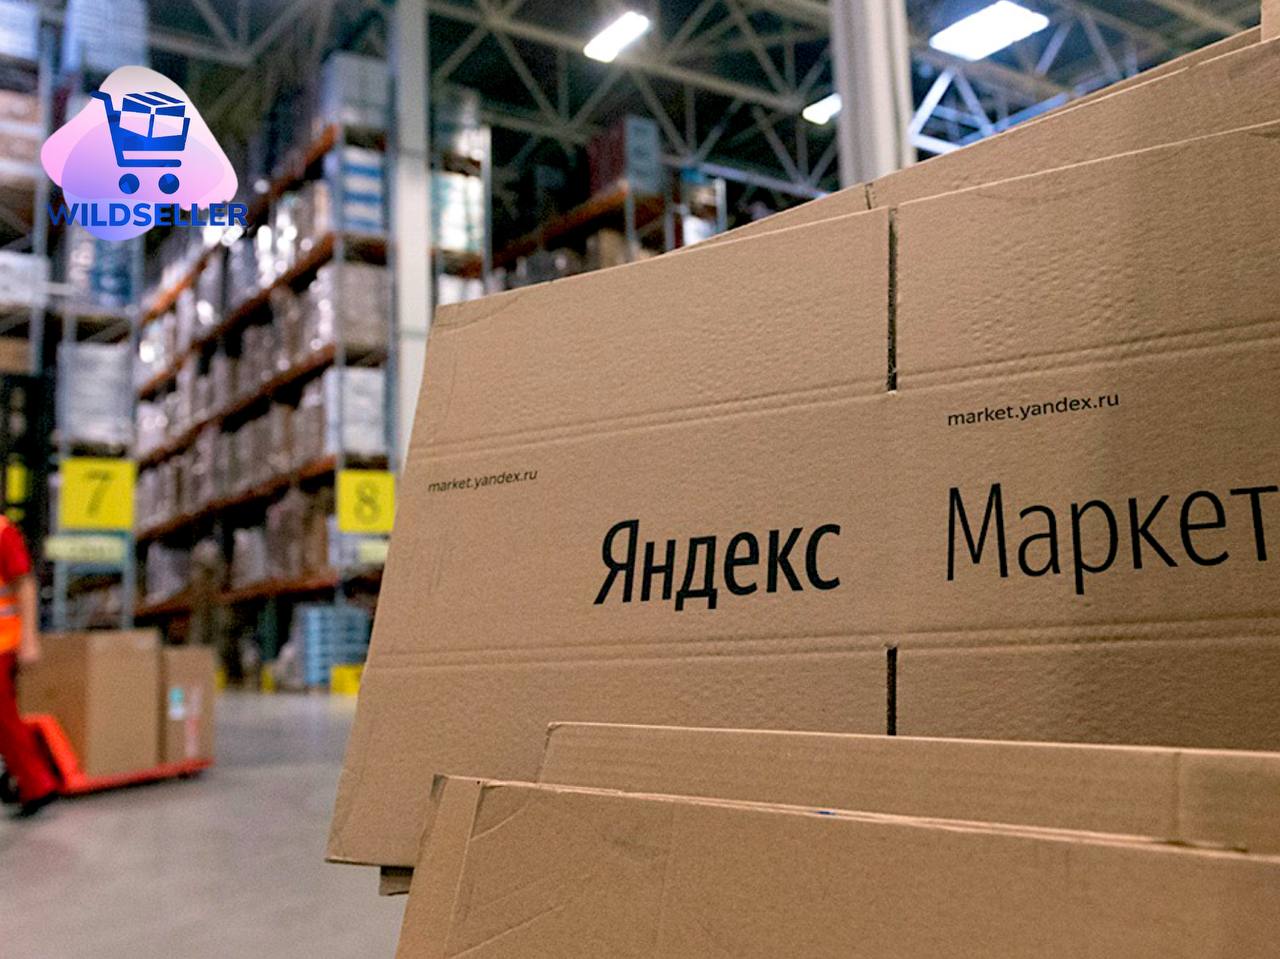 Яндекс позволил продавцам одежды и обуви торговать на Маркете с комиссией 1 рубль